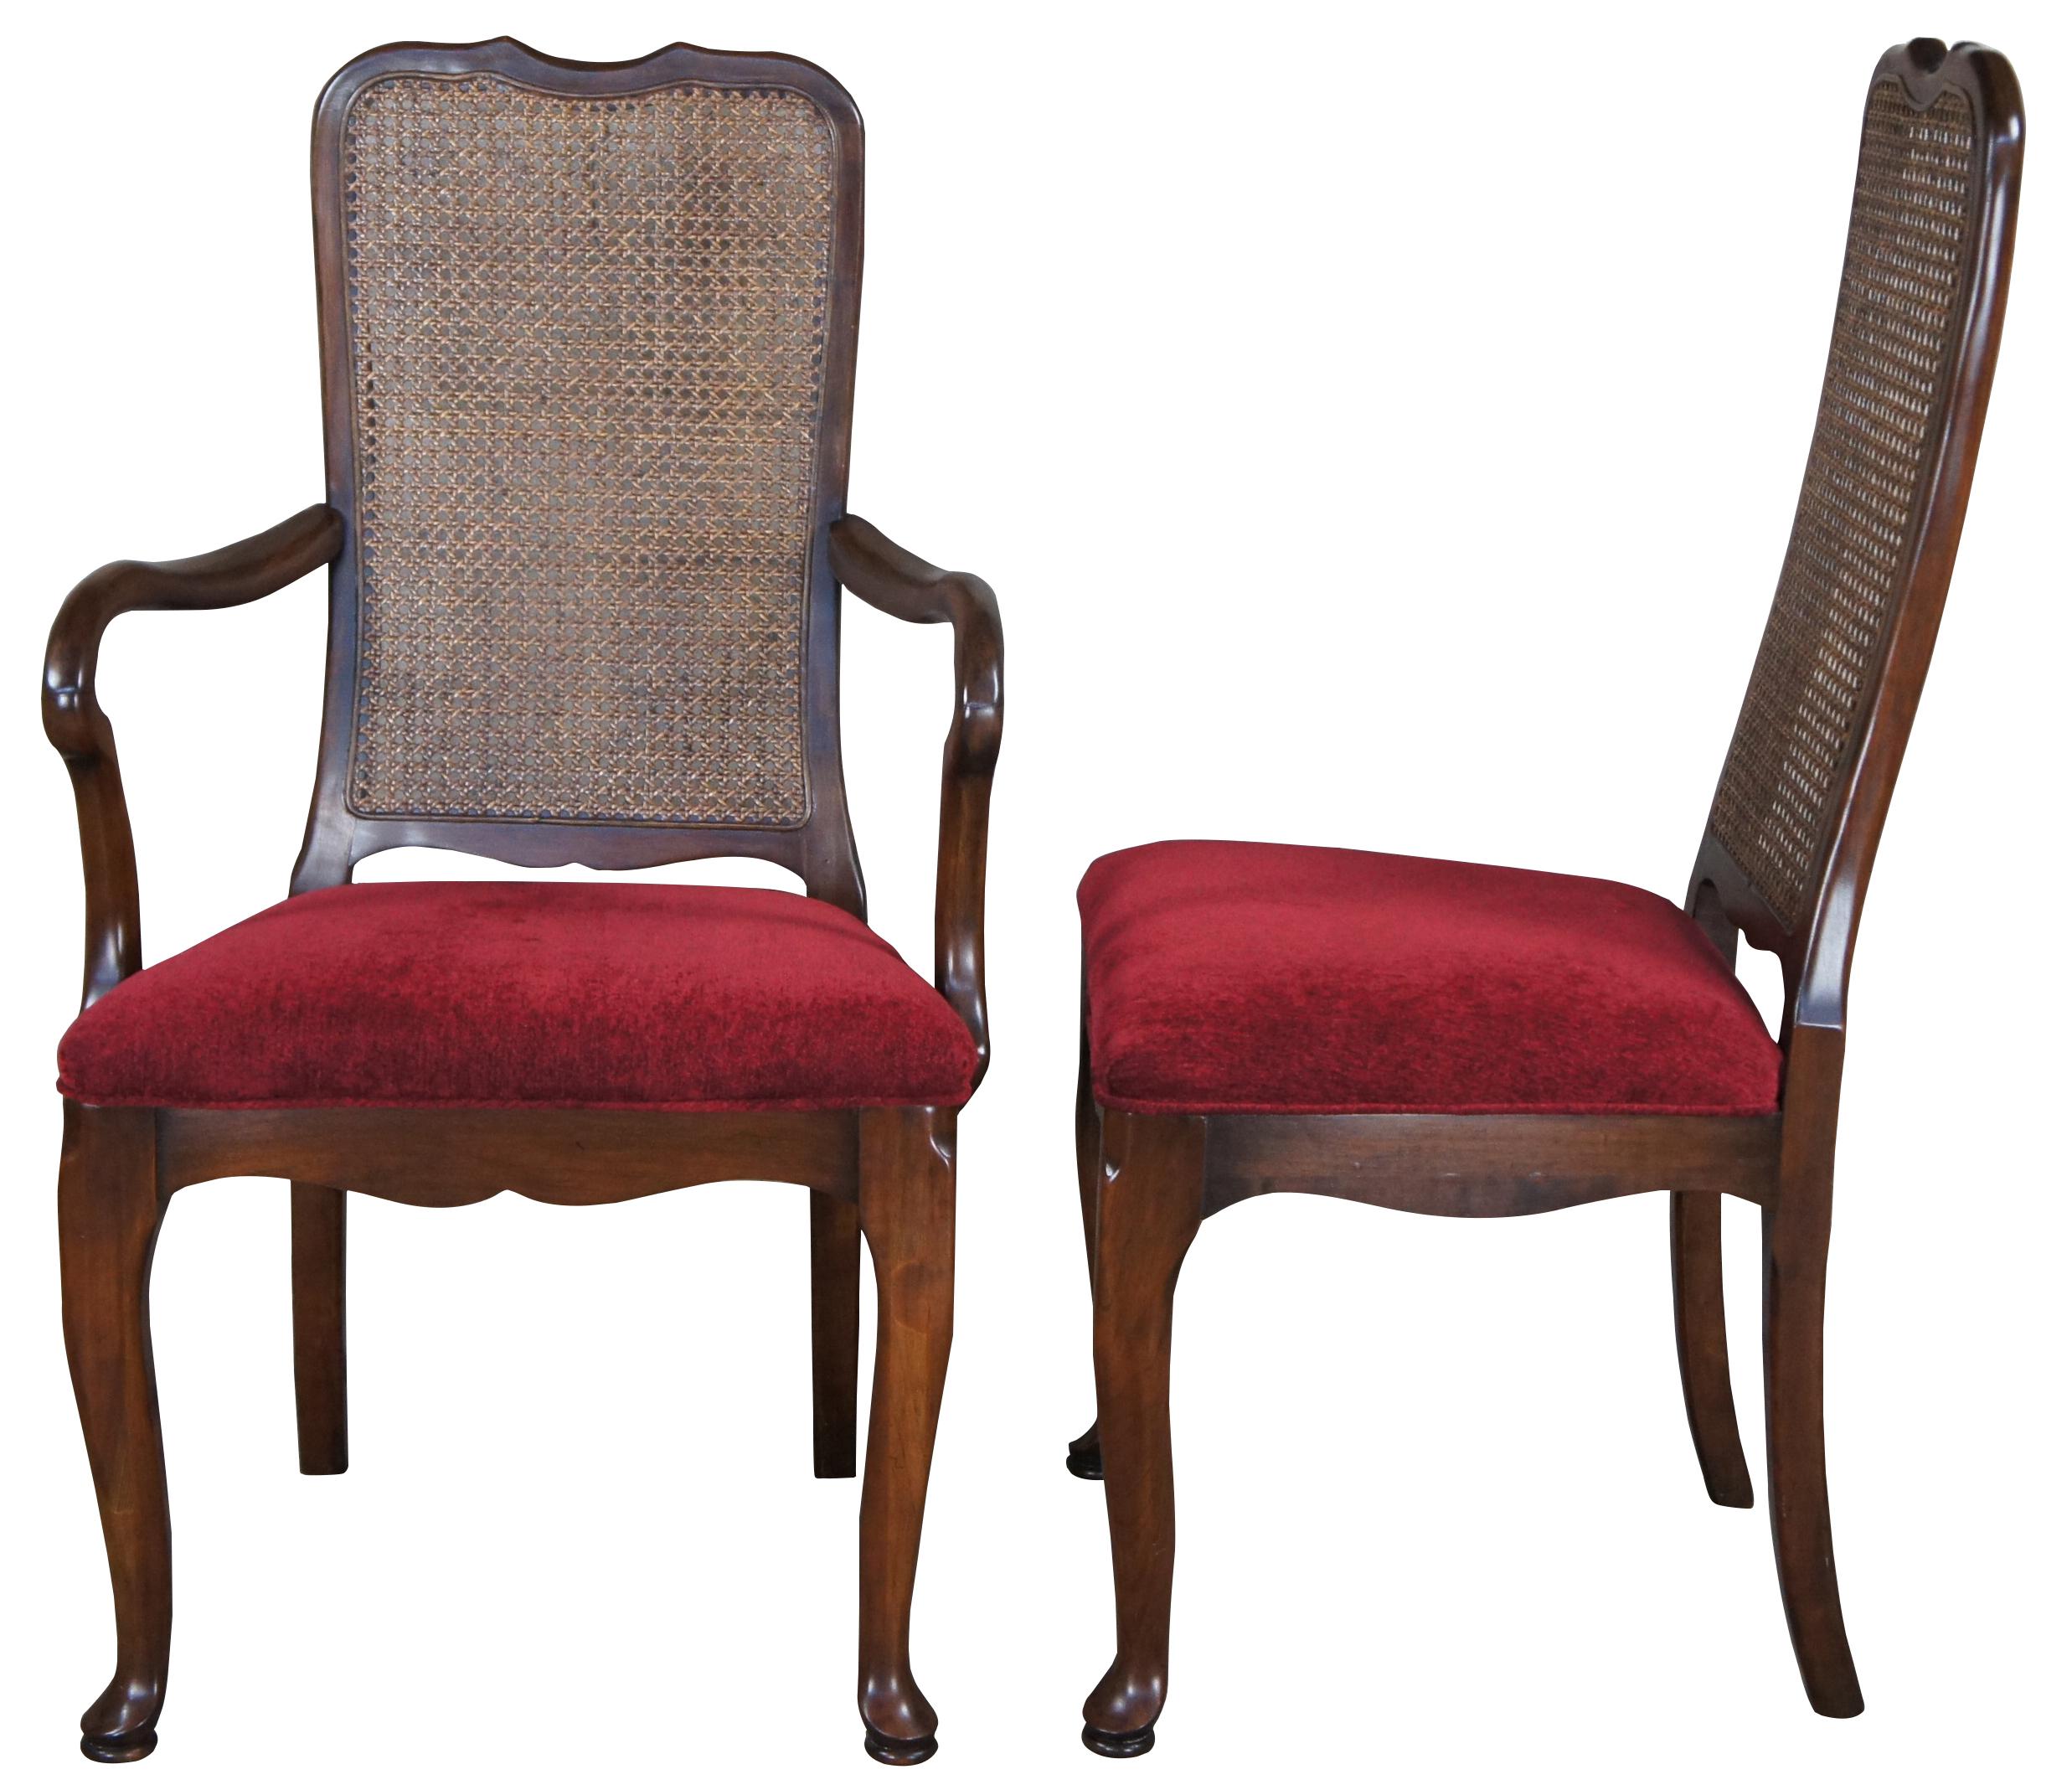 Six chaises de salle à manger vintage par Harden Furniture, vers 1958. Fabriqué en cerisier massif, il présente un rail de crête menant à des dossiers cannelés, une tapisserie rouge et des pieds cabriole menant à des pieds coussinés. Comprend un